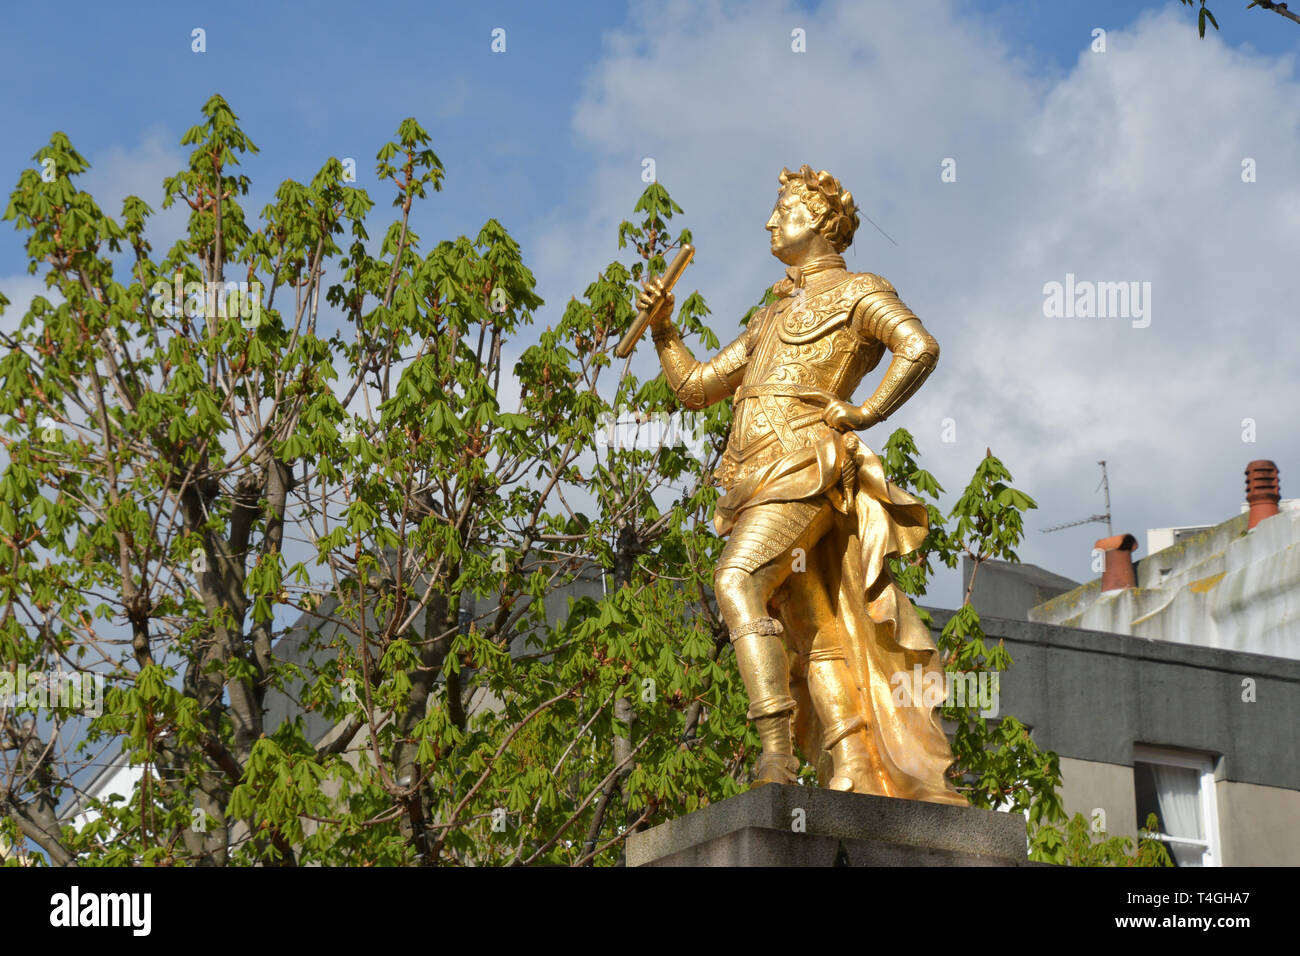 Statua di George II in abito romano, è diventato una parte accettata di St Helier Royal Square, dominato dai membri di edifici.Jersey,canale isola Foto Stock